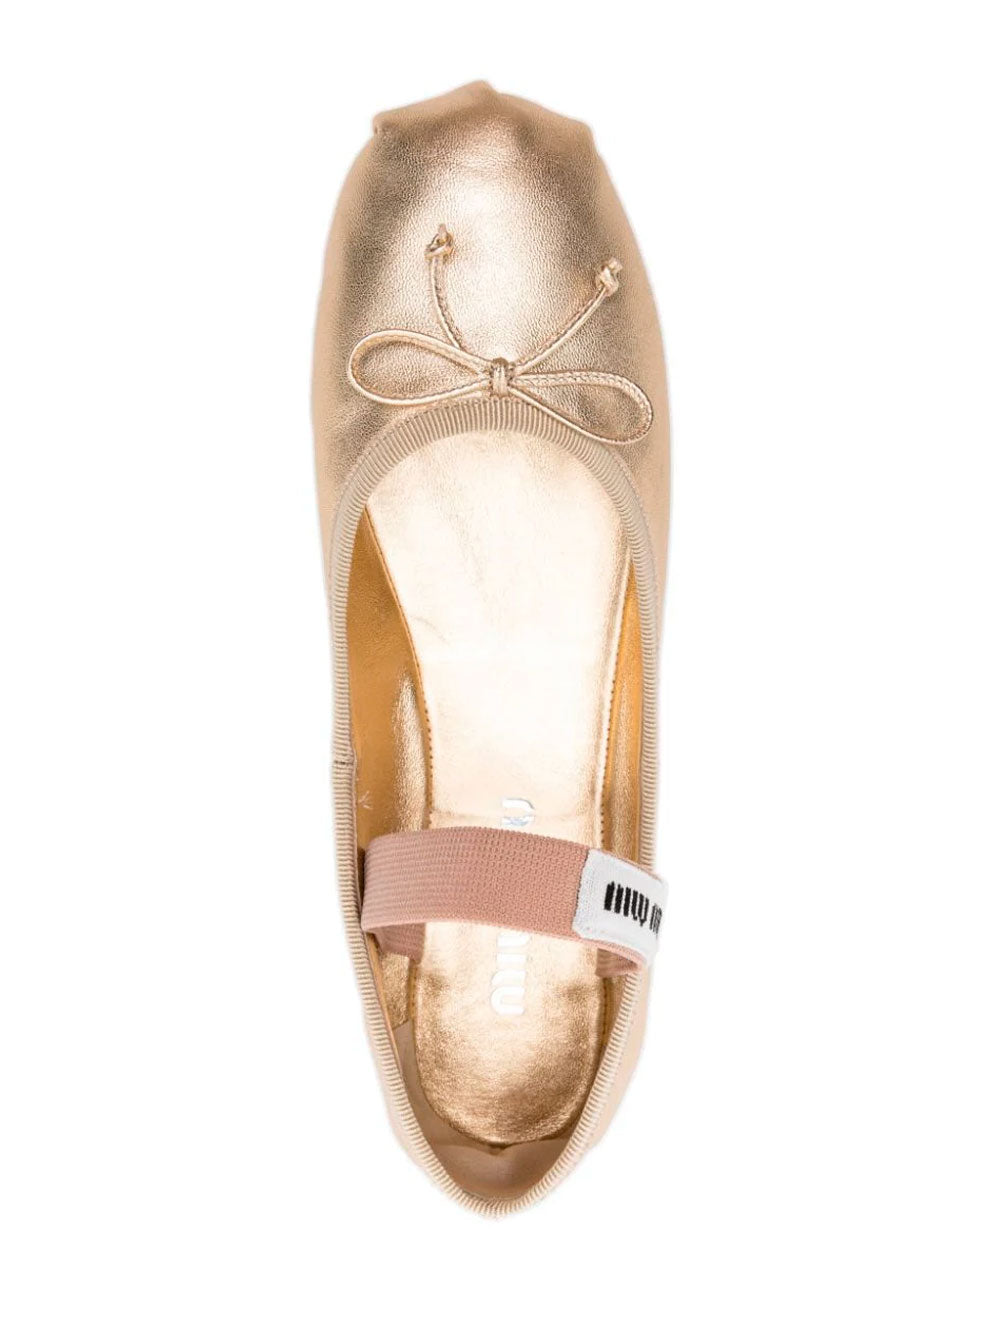 Logo ballerina shoes